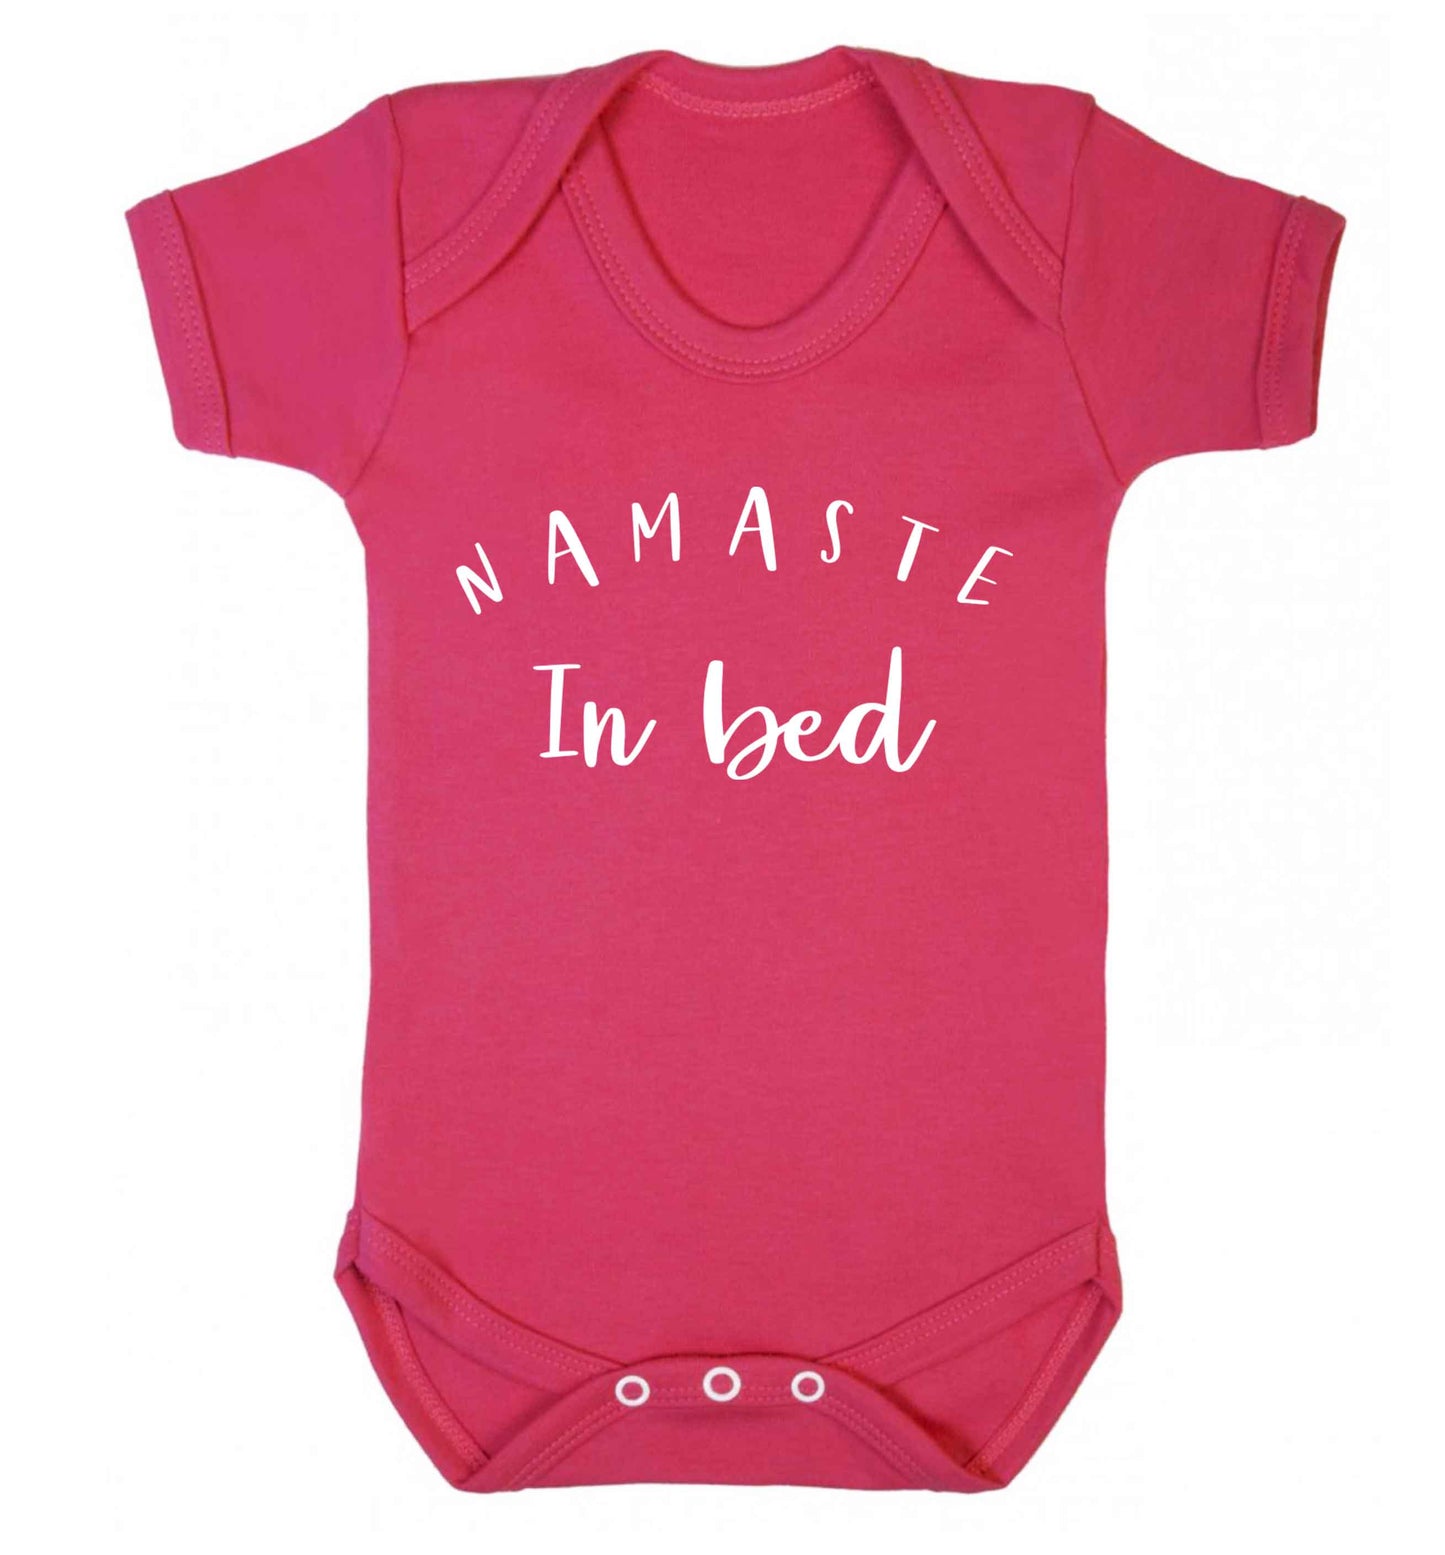 Namaste in bed Baby Vest dark pink 18-24 months